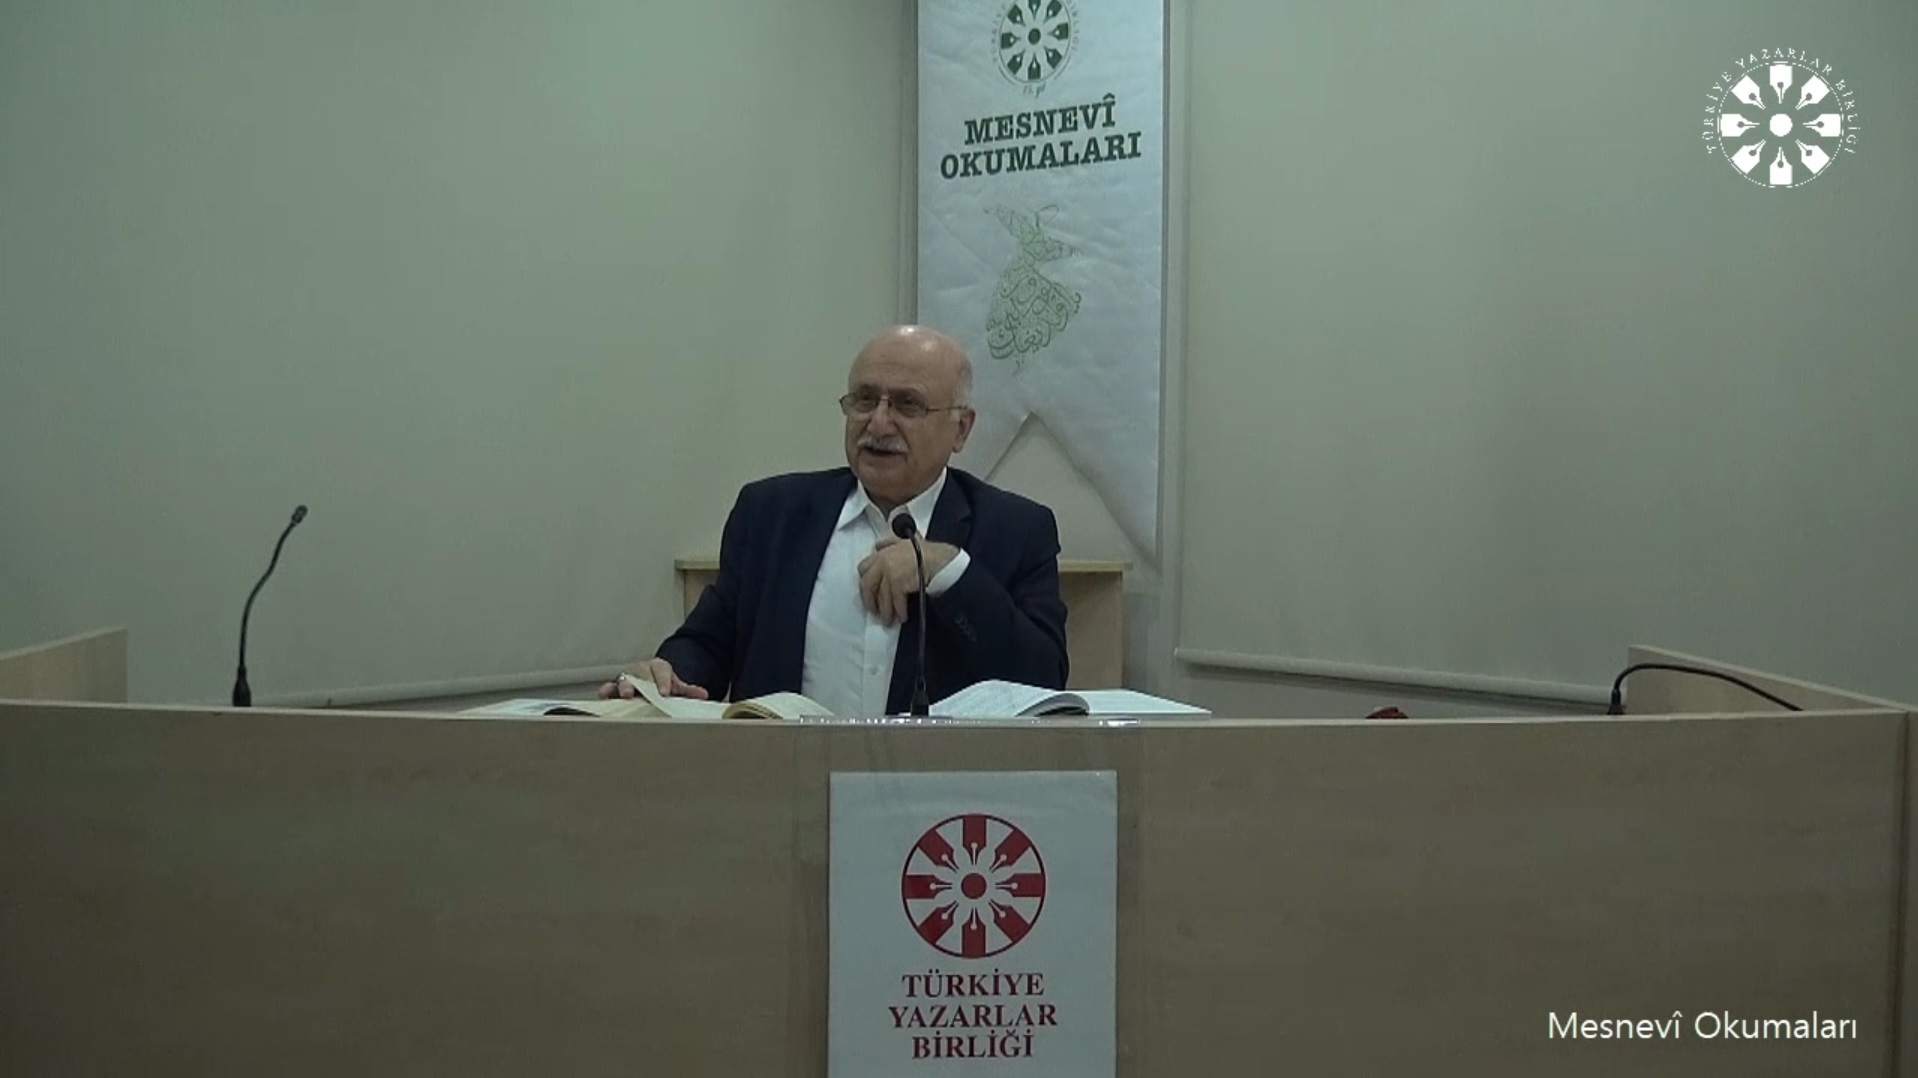 Mesnevî Okumaları -177- Prof. Dr. Adnan Karaismailoğlu